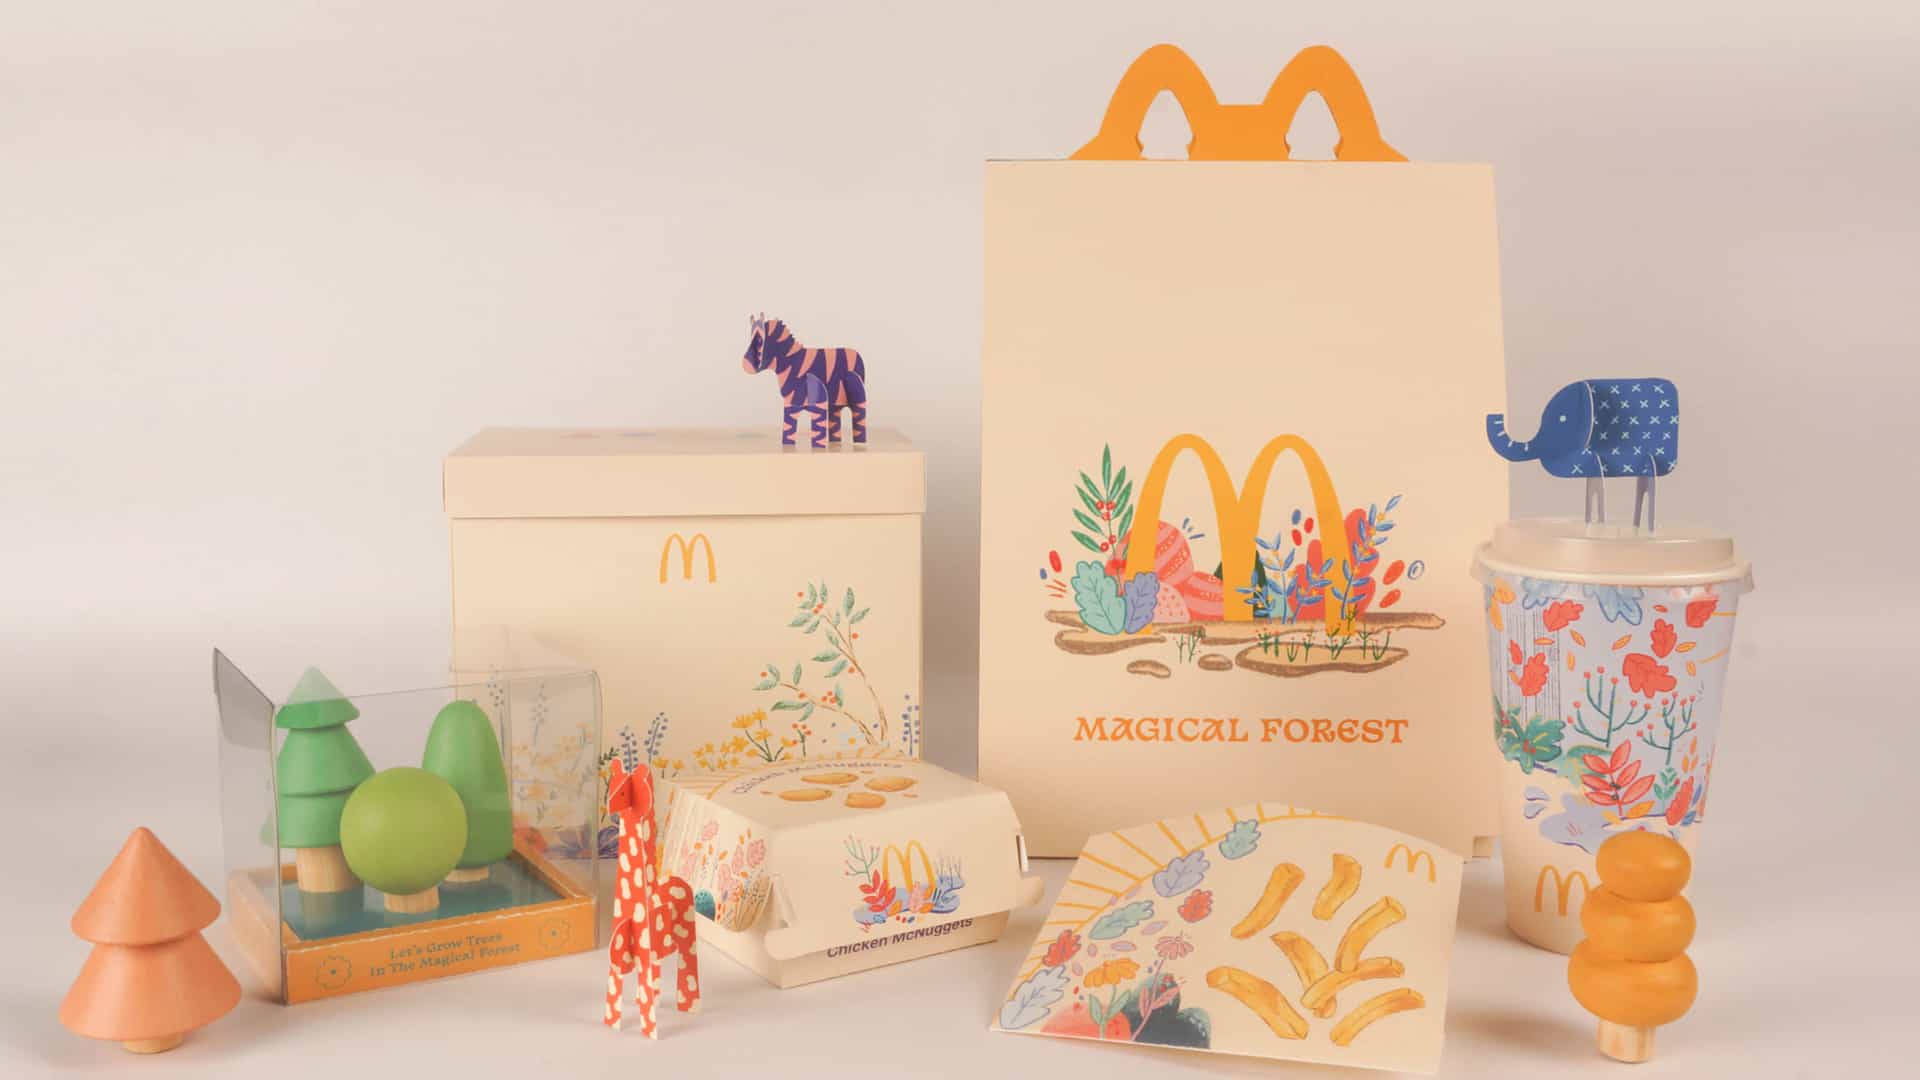 Estamos totalmente enamorados de este concepto de empaque de McDonald's